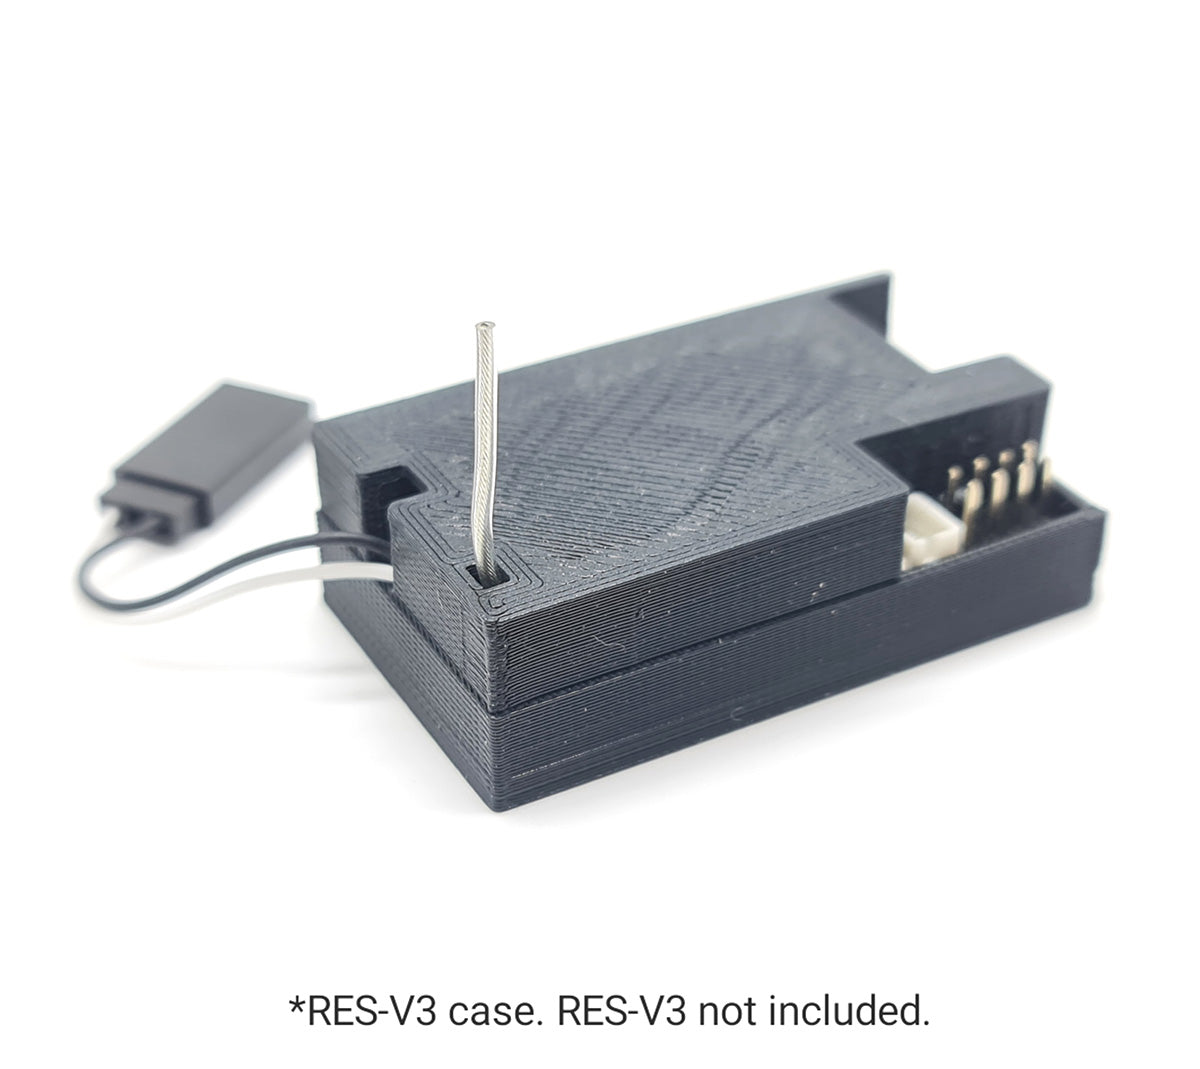 3D Printed Case for RES-V3